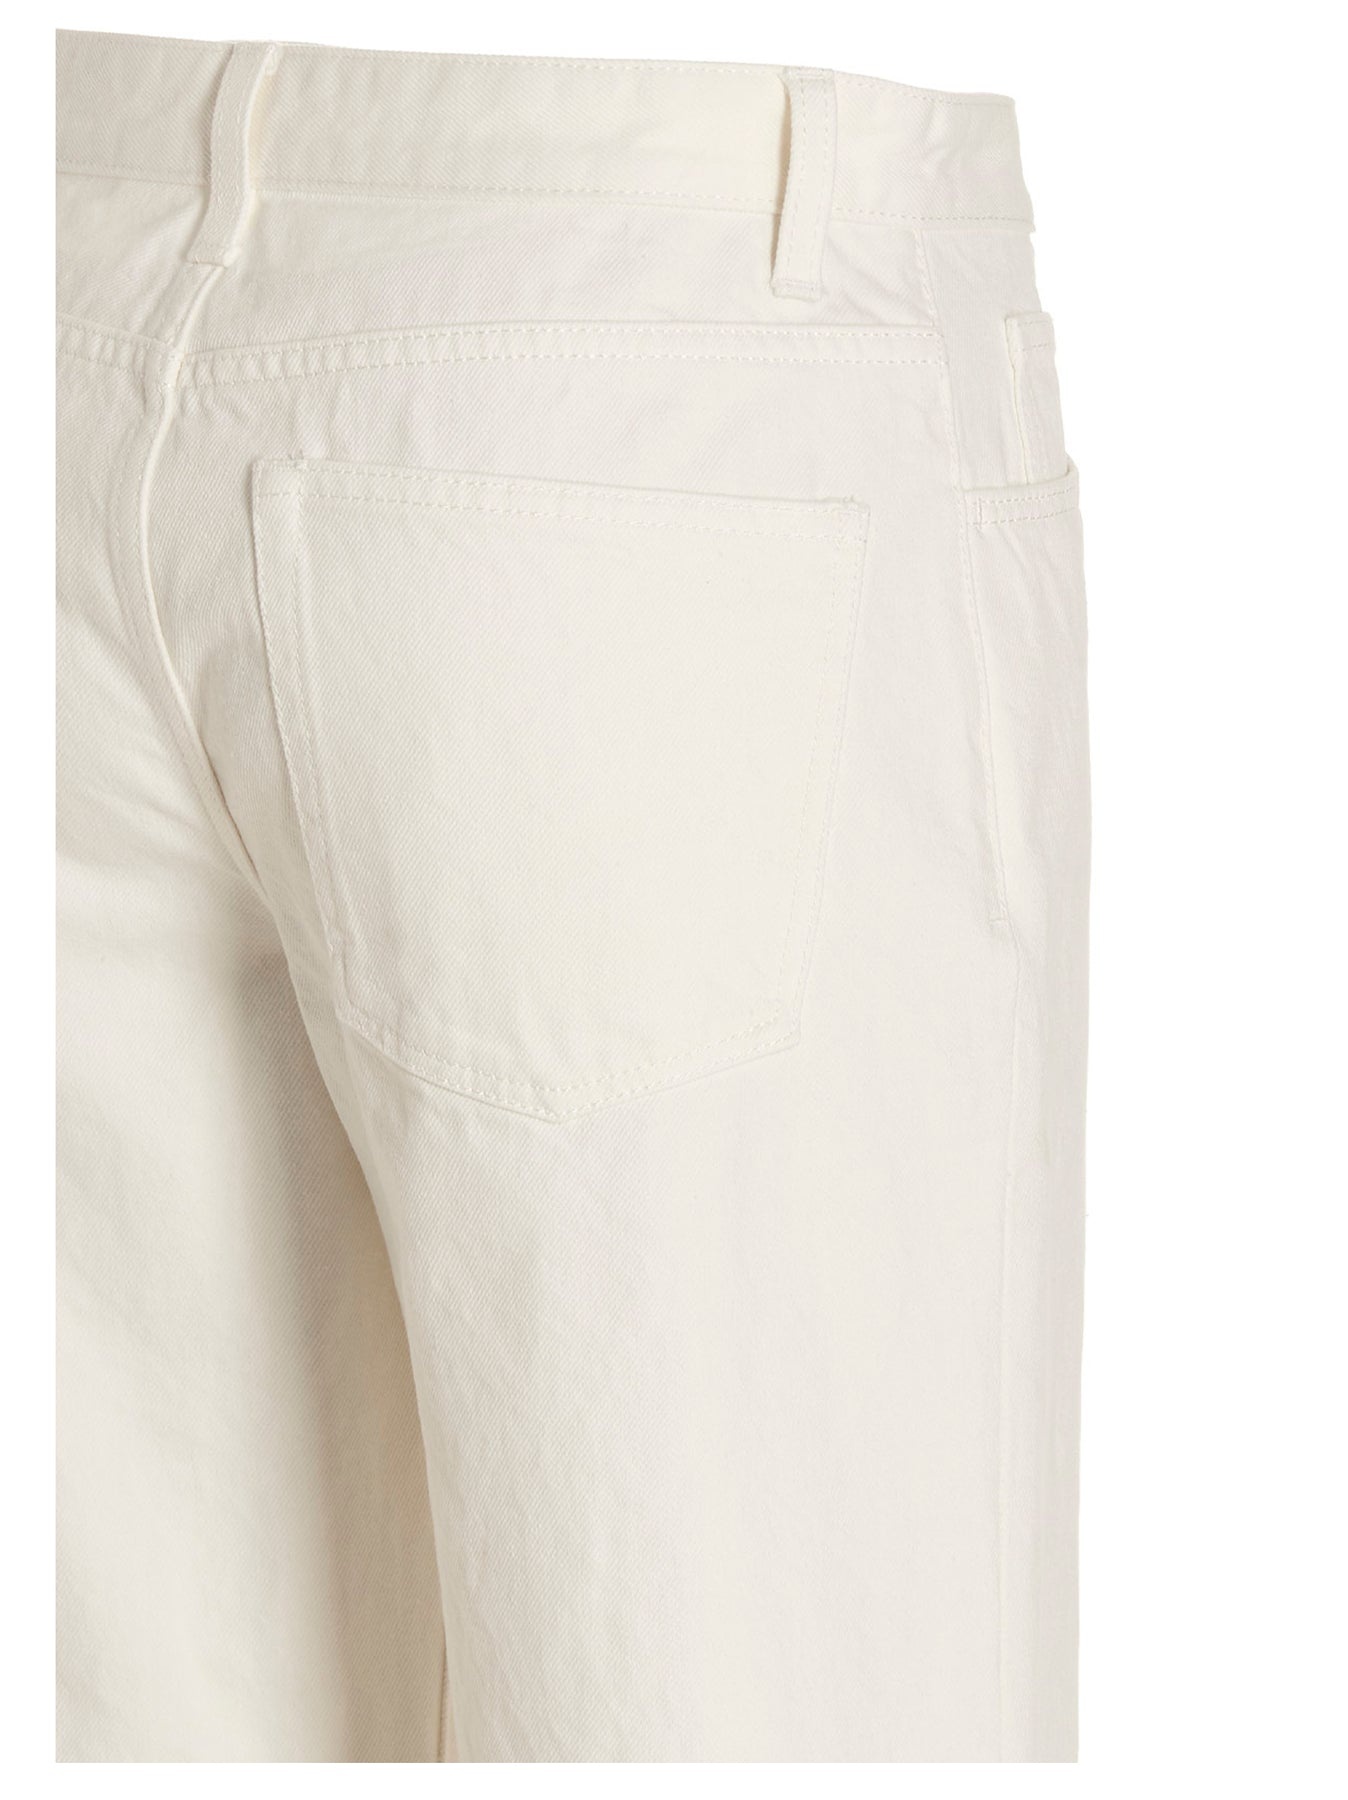 Eglitta Jeans White - 4